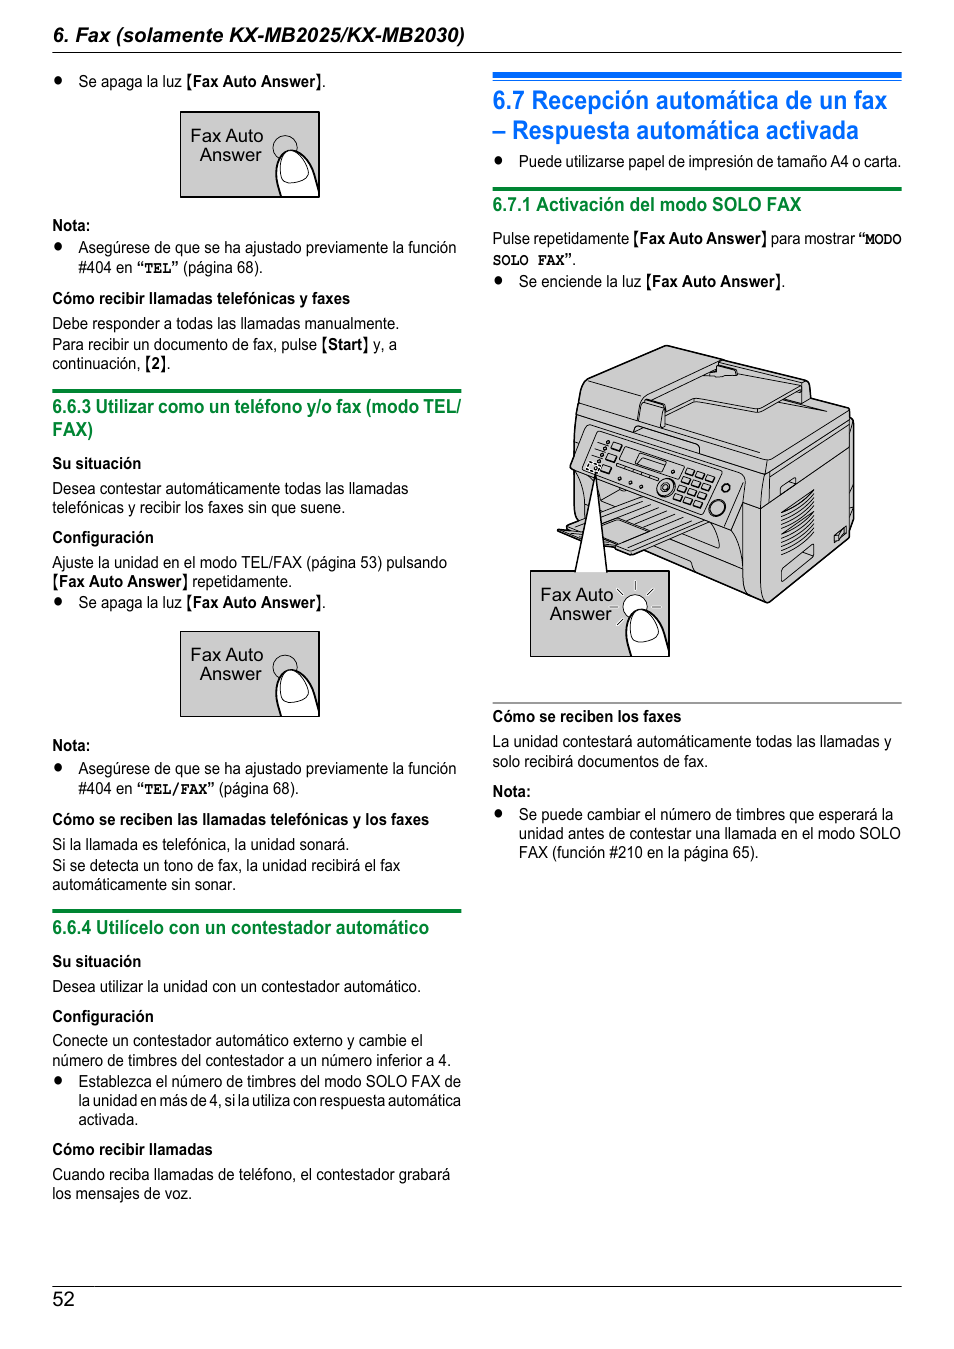 3 utilizar como un teléfono y/o fax (modo tel/fax), 4 utilícelo con un contestador automático, 1 activación del modo solo fax | Panasonic KXMB2010GX Manual del usuario | Página 52 / 128